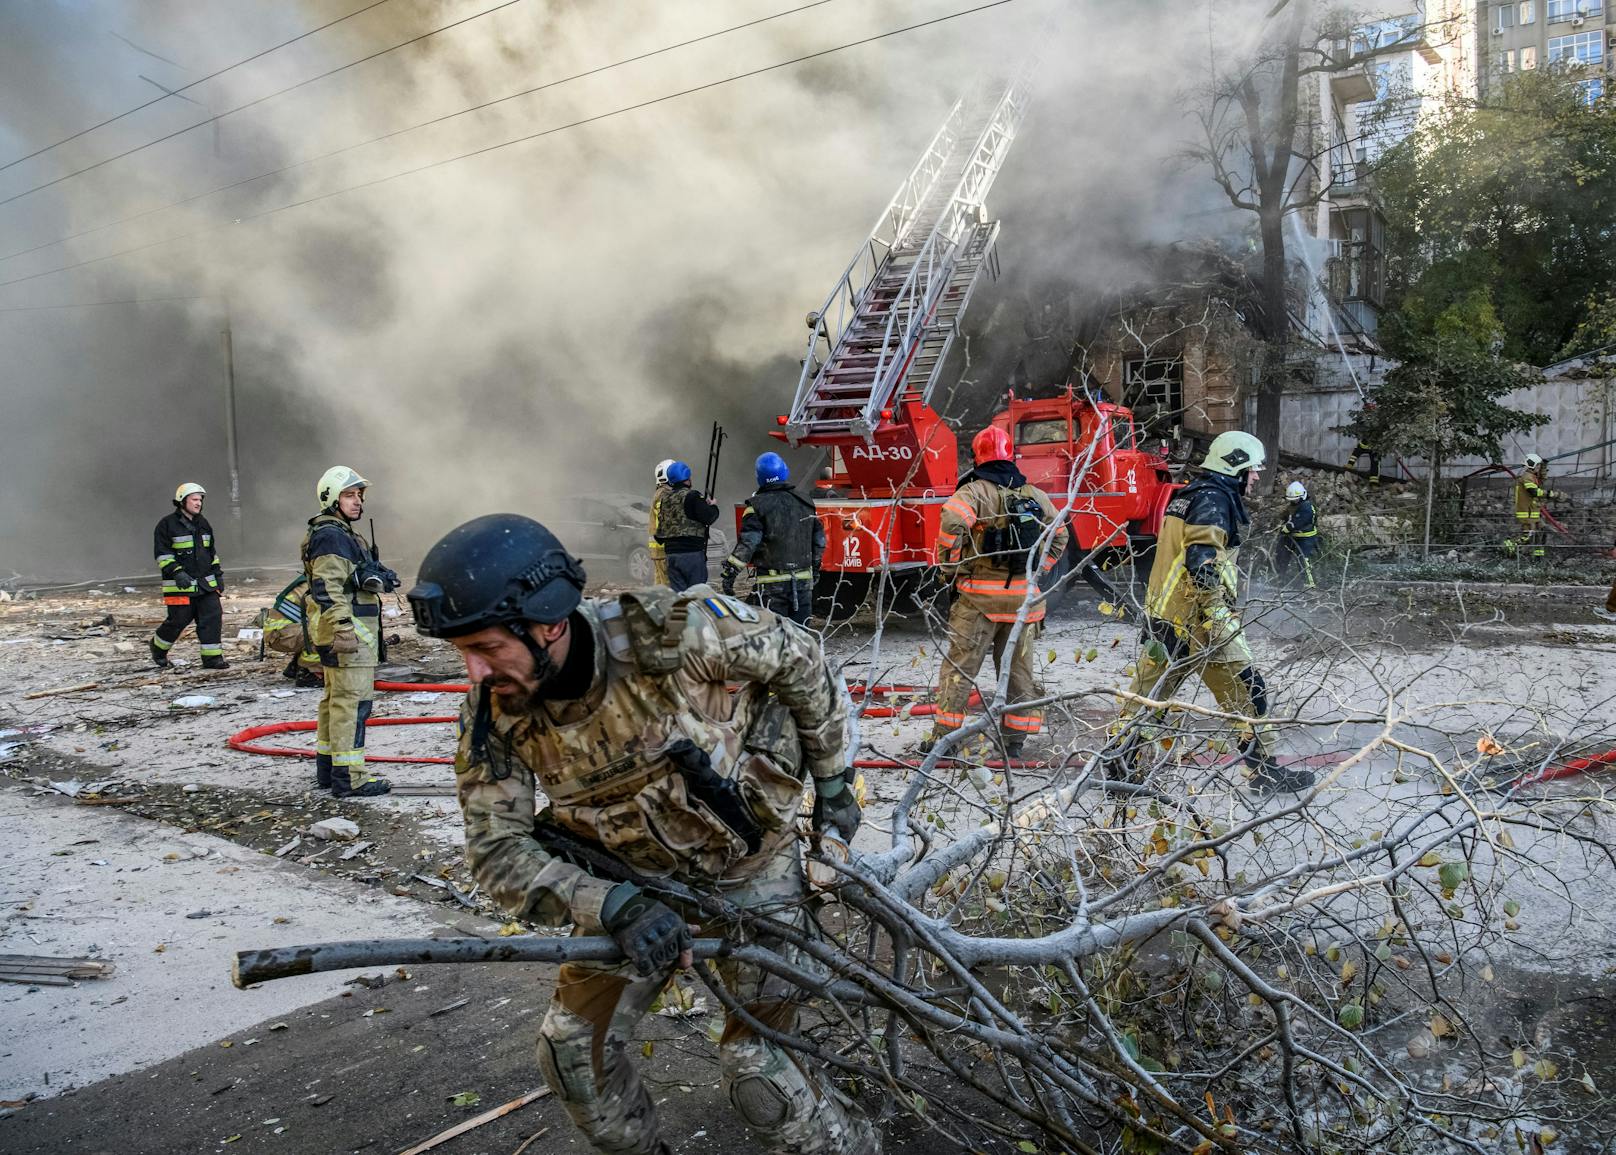 Laute Explosionen erschütterten die Stadt, Gebäude wurden in Brand gesetzt, Menschen retteten sich in Schutzräume.